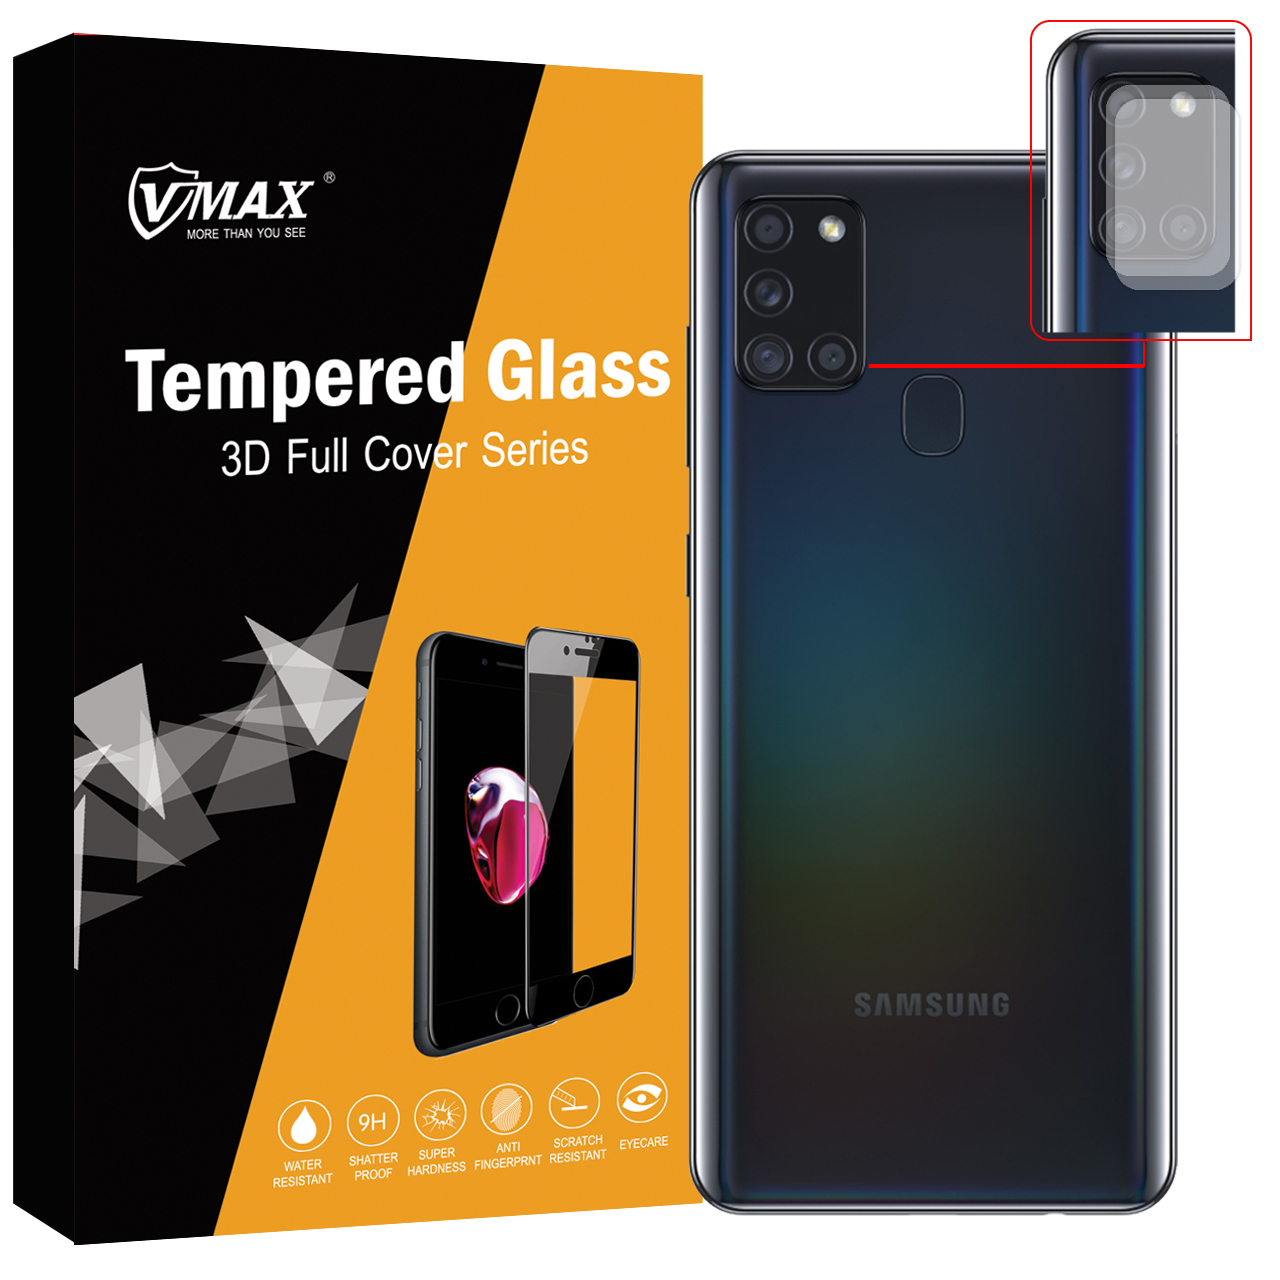  محافظ لنز دوربین وی مکس مدل VC2 مناسب برای گوشی موبایل سامسونگ Galaxy A21s بسته دو عددی